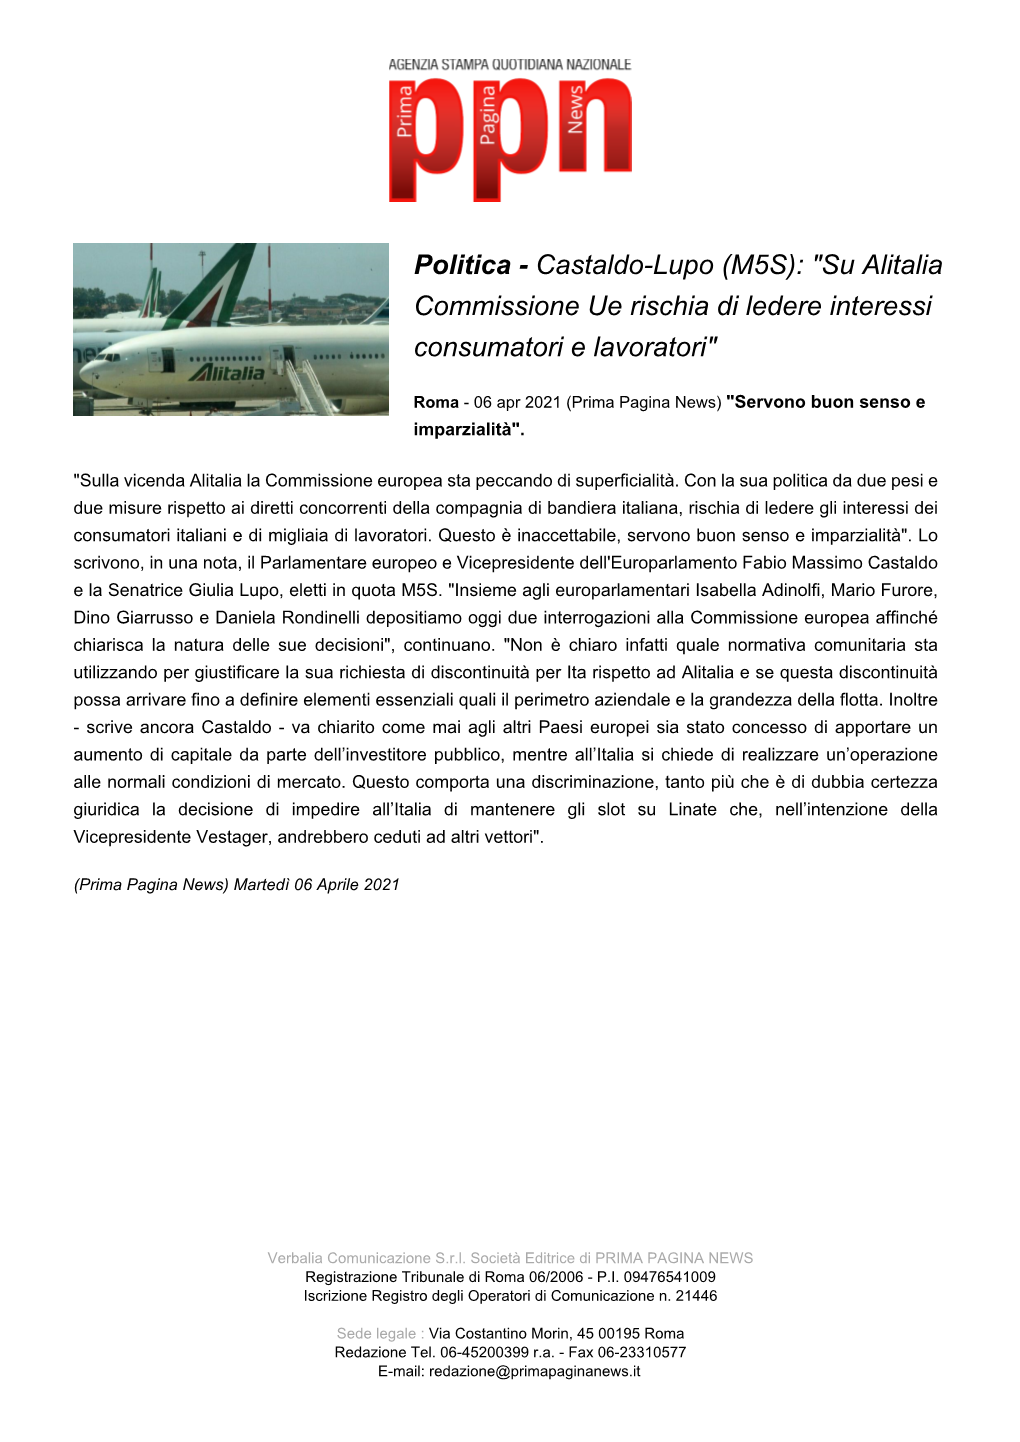 Castaldo-Lupo (M5S): "Su Alitalia Commissione Ue Rischia Di Ledere Interessi Consumatori E Lavoratori"